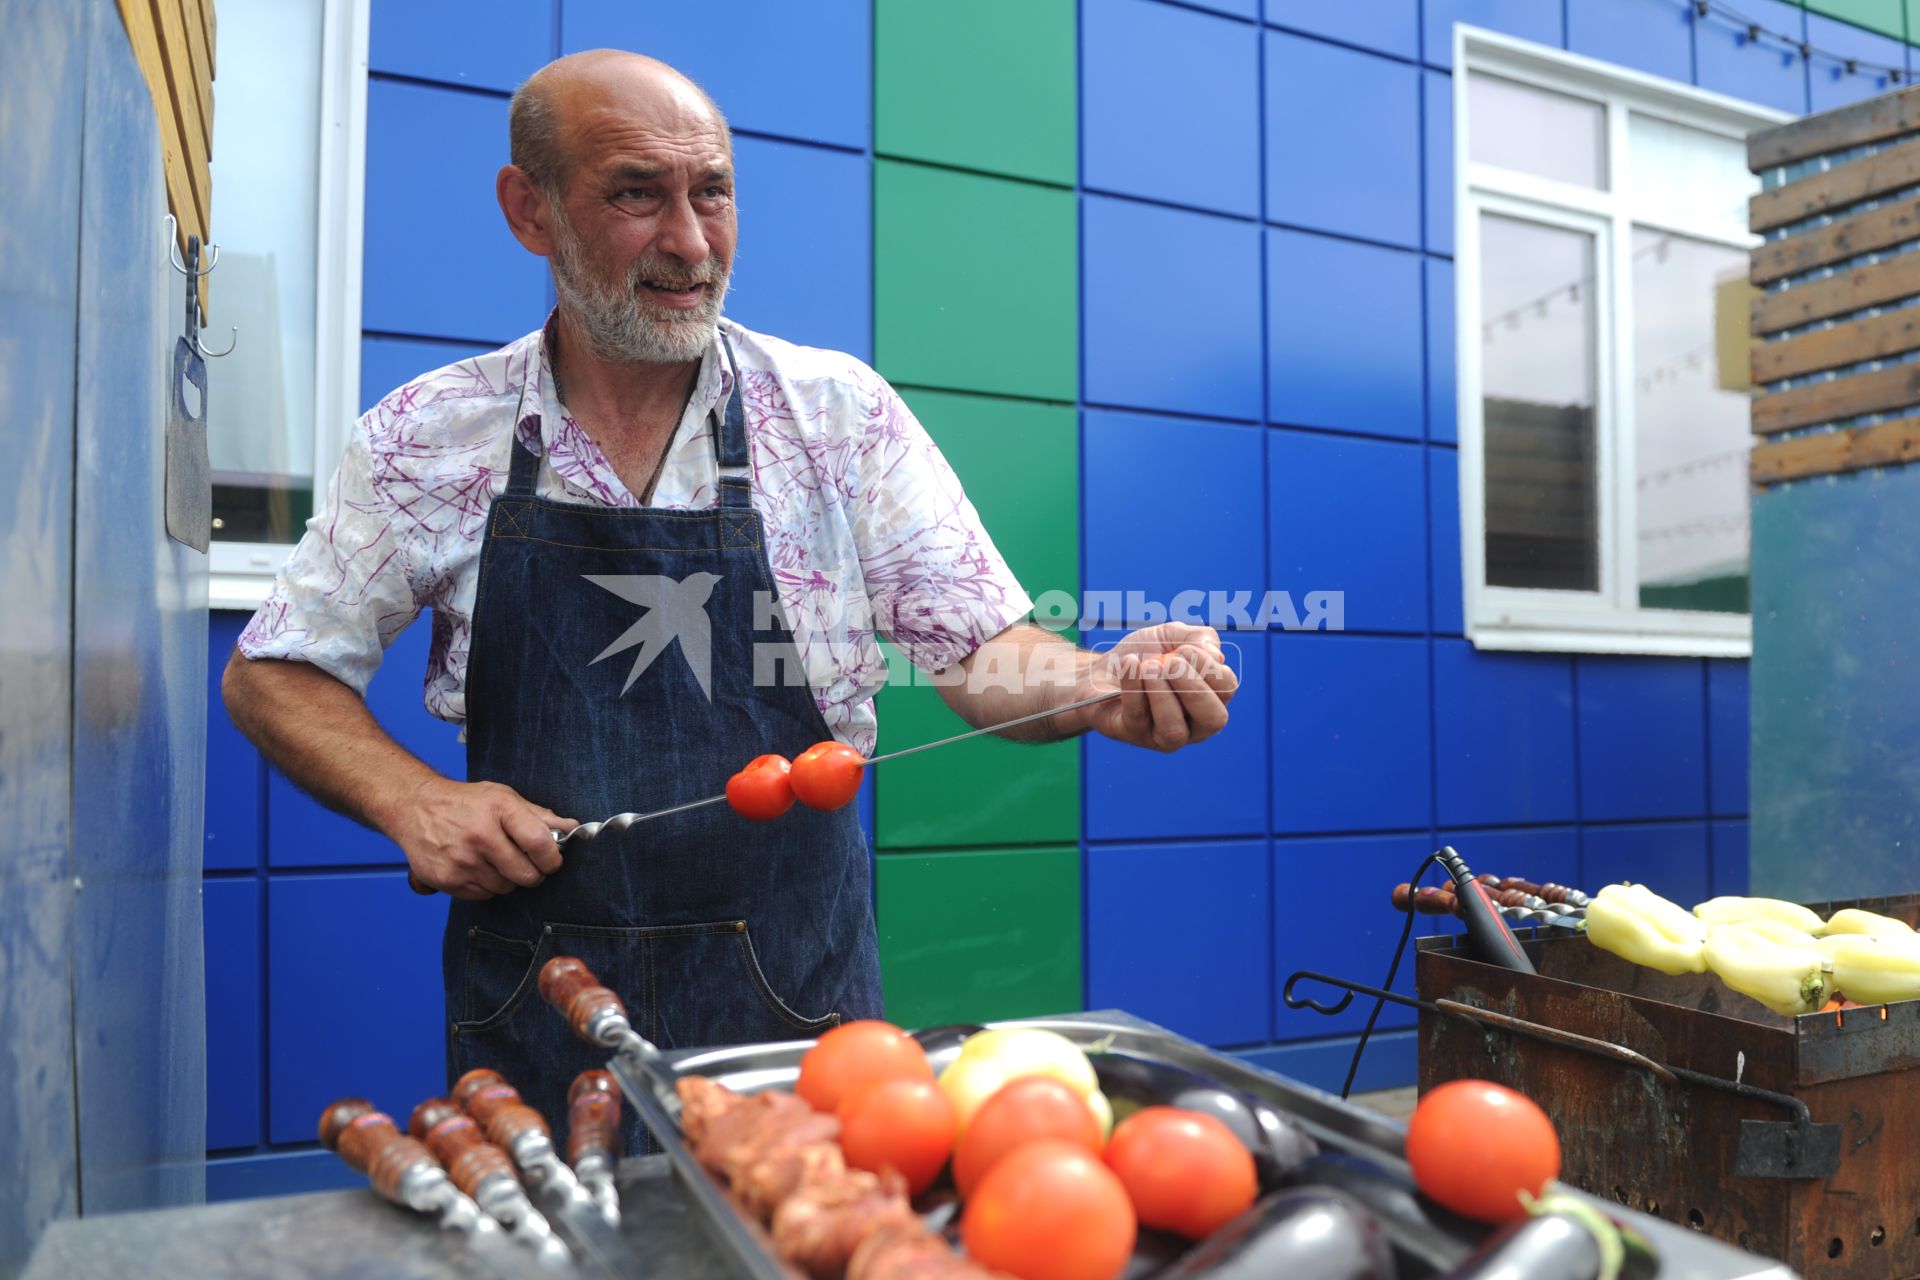 Санкт-Петербург. Шашлычник нанизывает помидоры на шампур на Южном рынке.